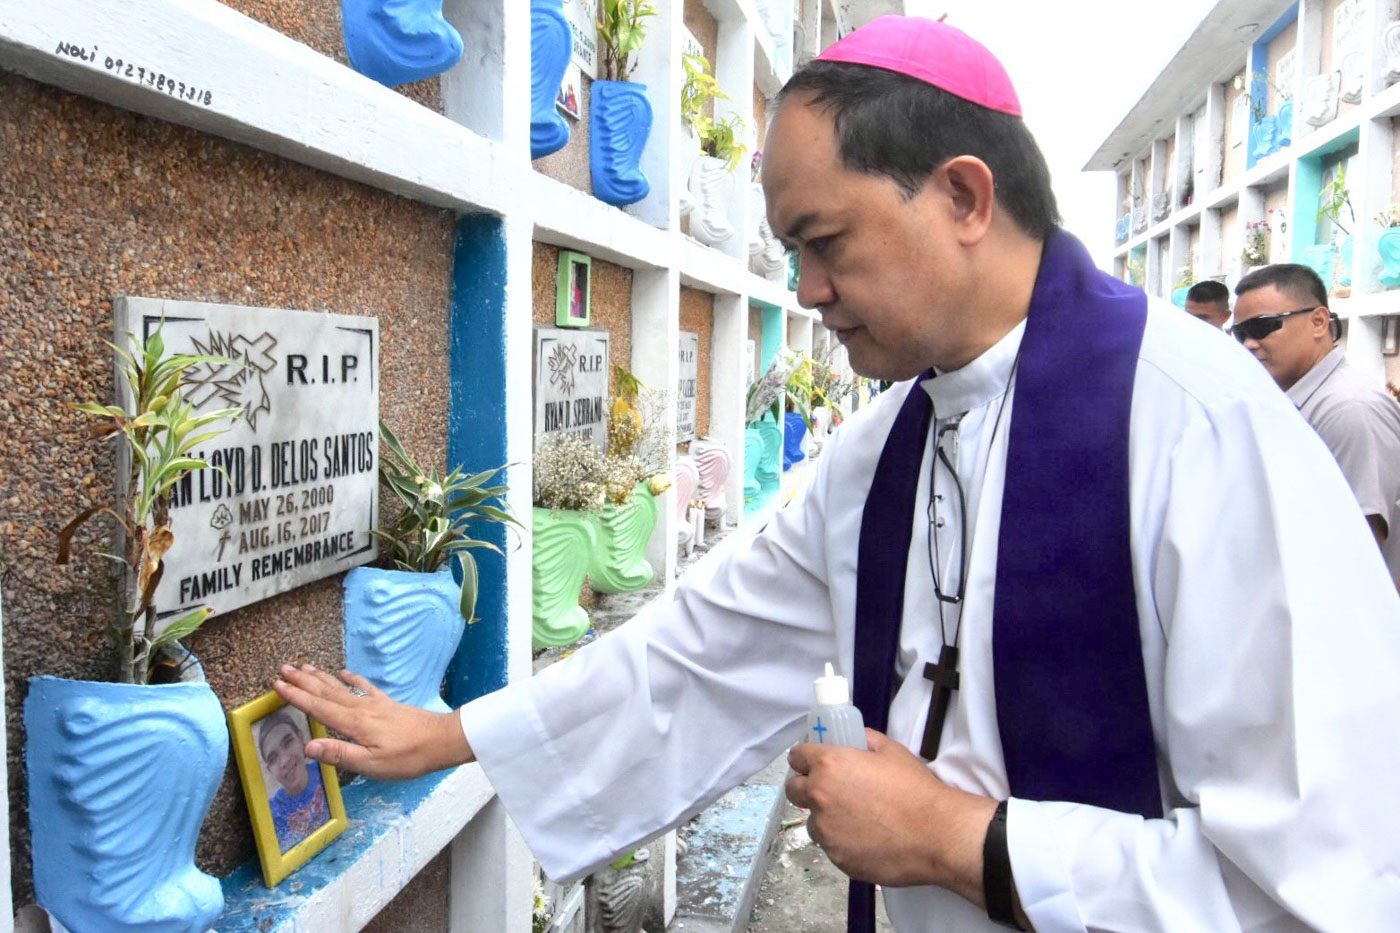 Bishop David hails conviction of Kian delos Santos killers